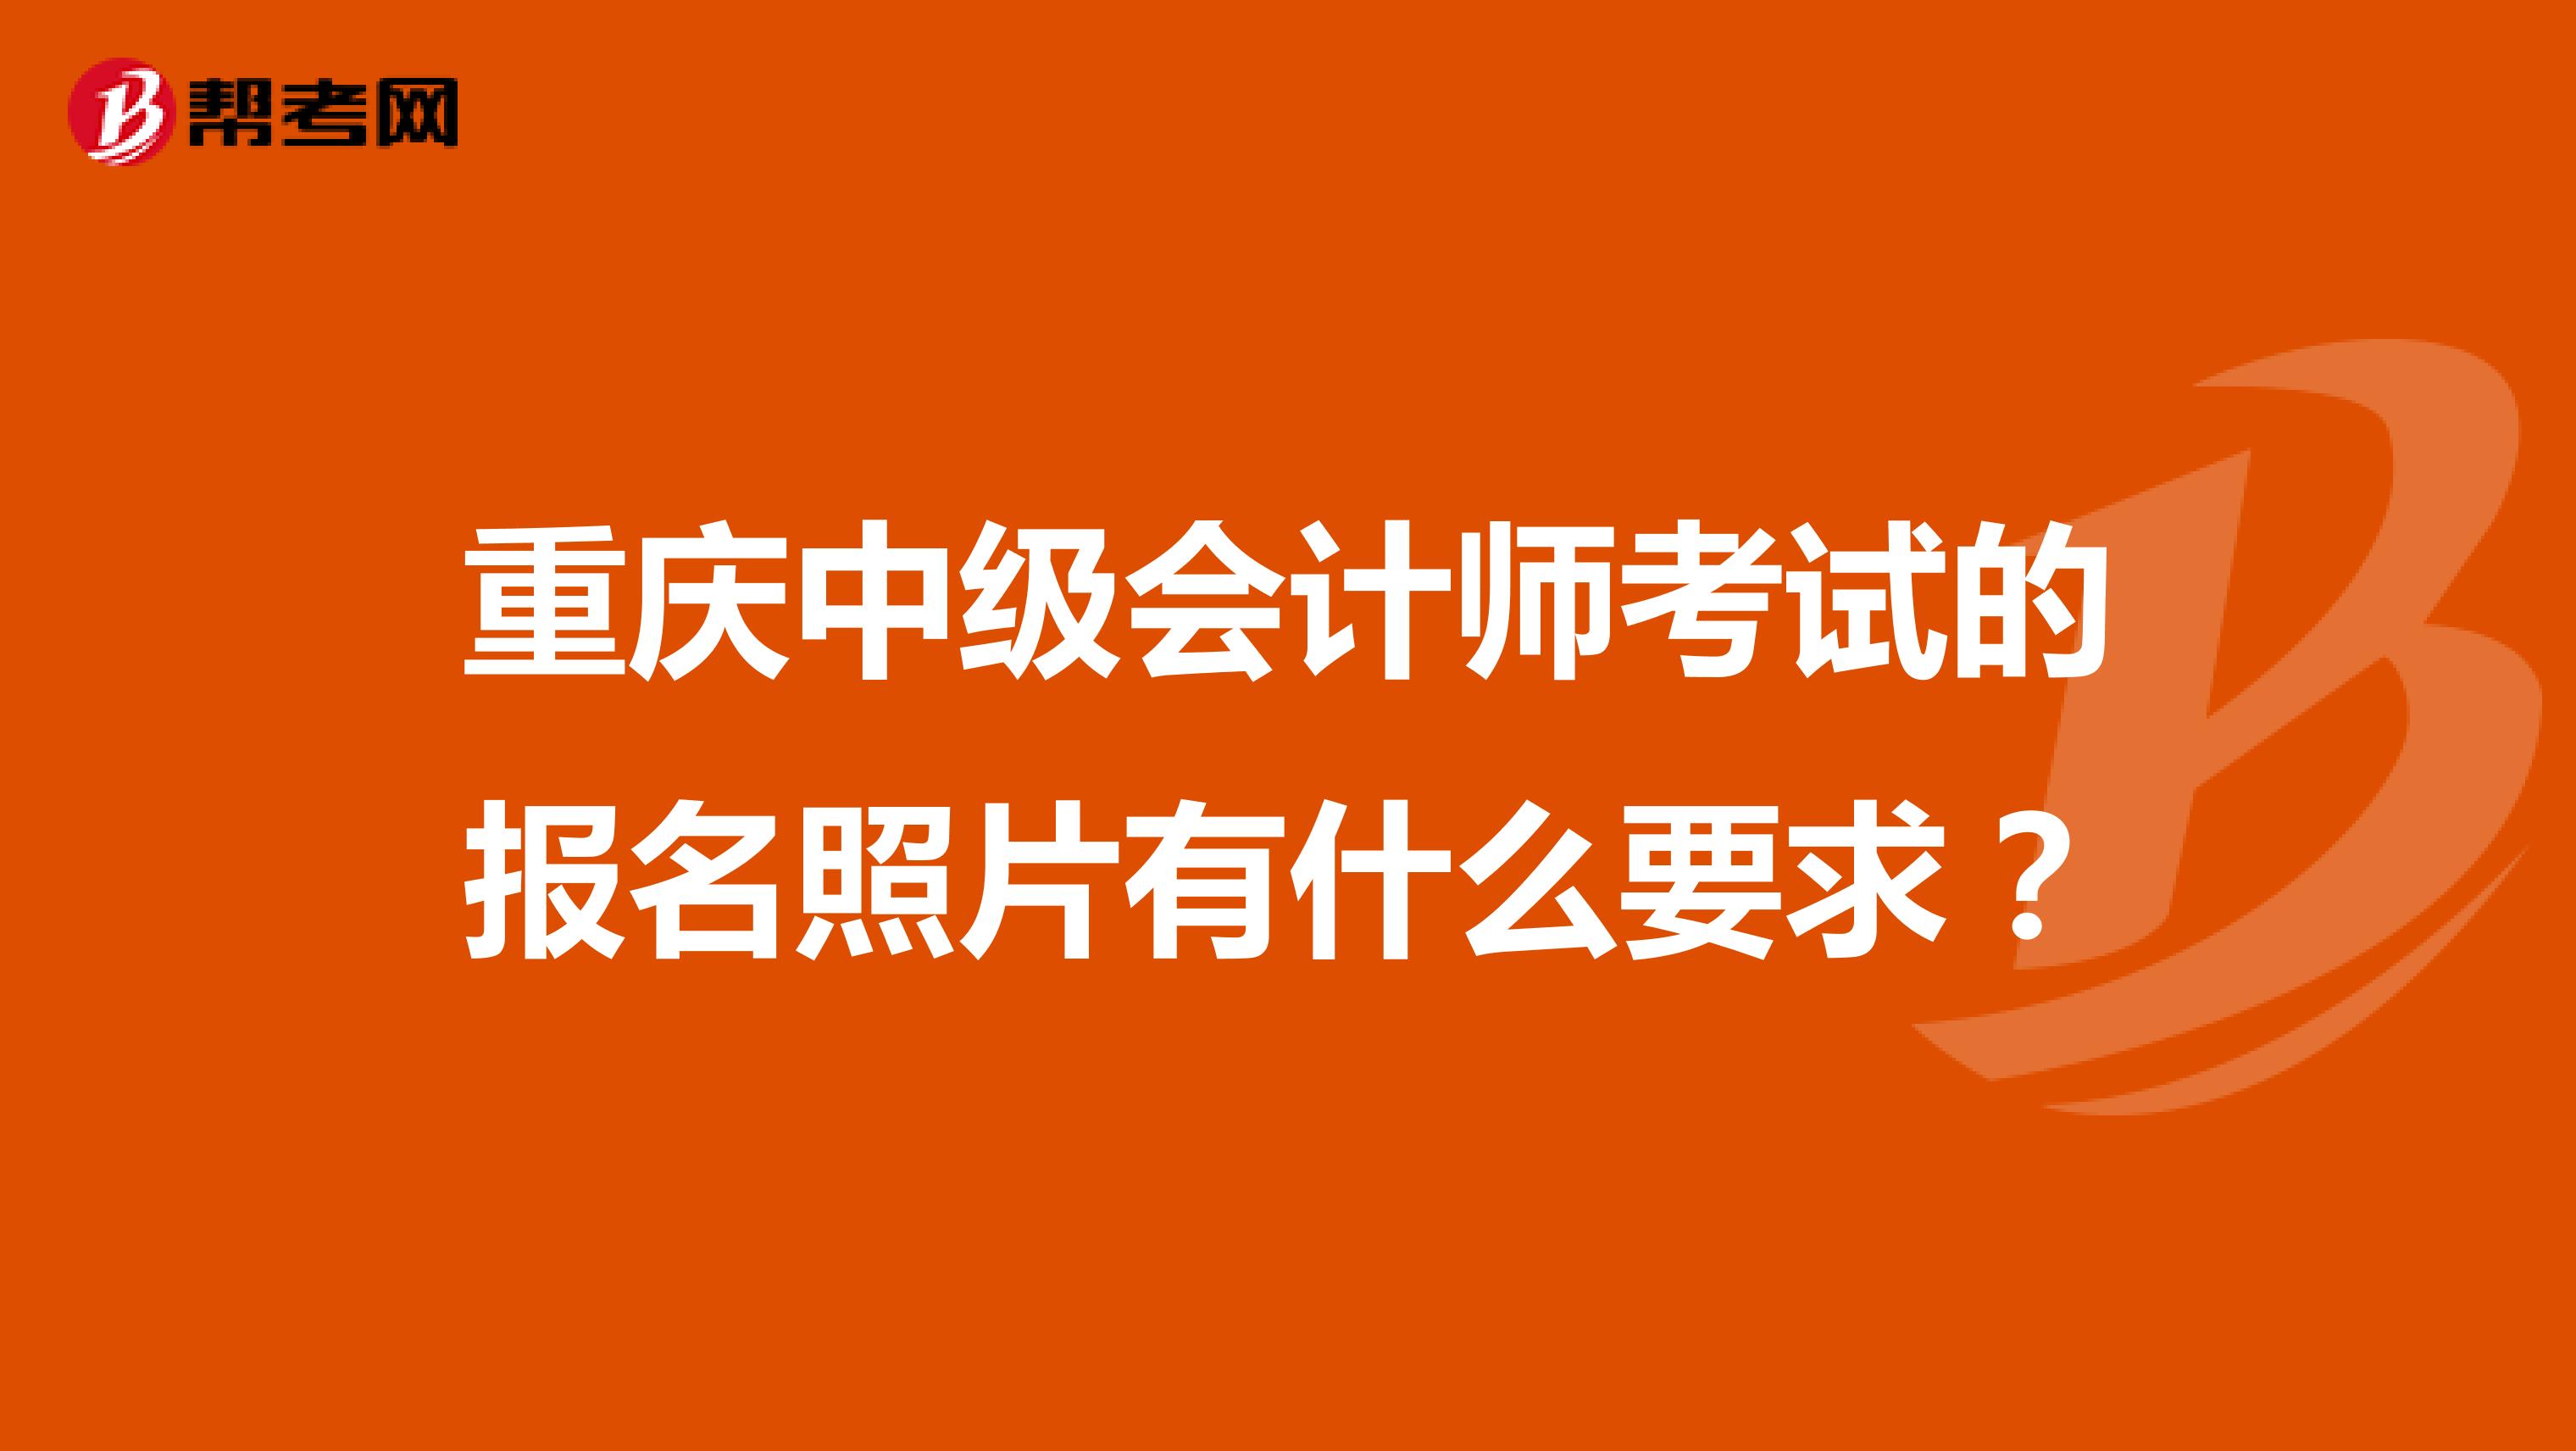 重庆中级会计师考试的报名照片有什么要求？